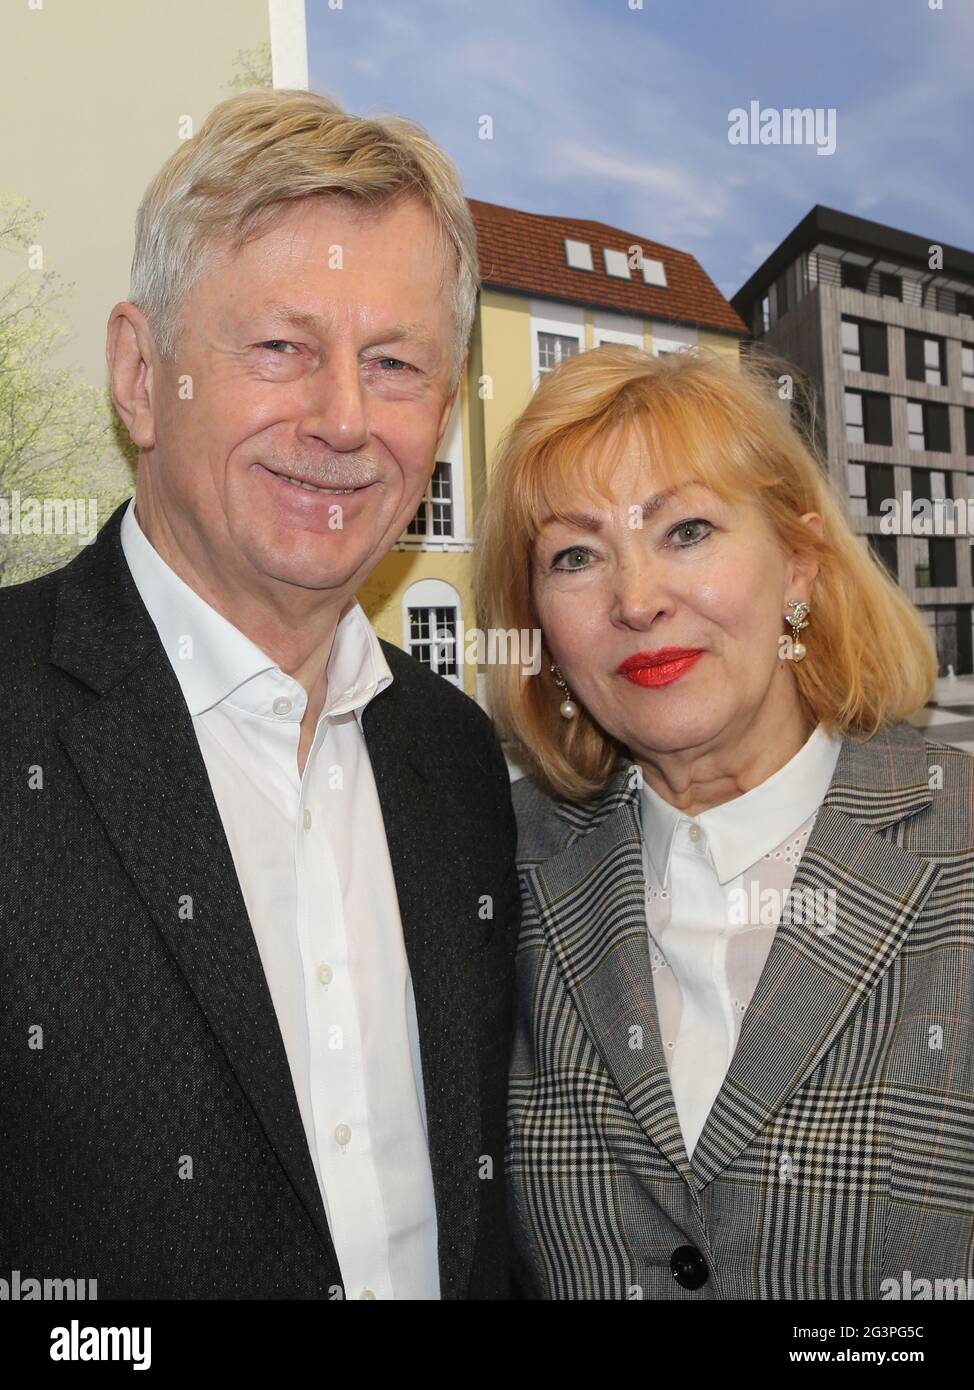 Dr. Karl Gerhold Socio gerente de GETEC ENERGIE HOLDING GmbH con esposa heidelinde Foto de stock